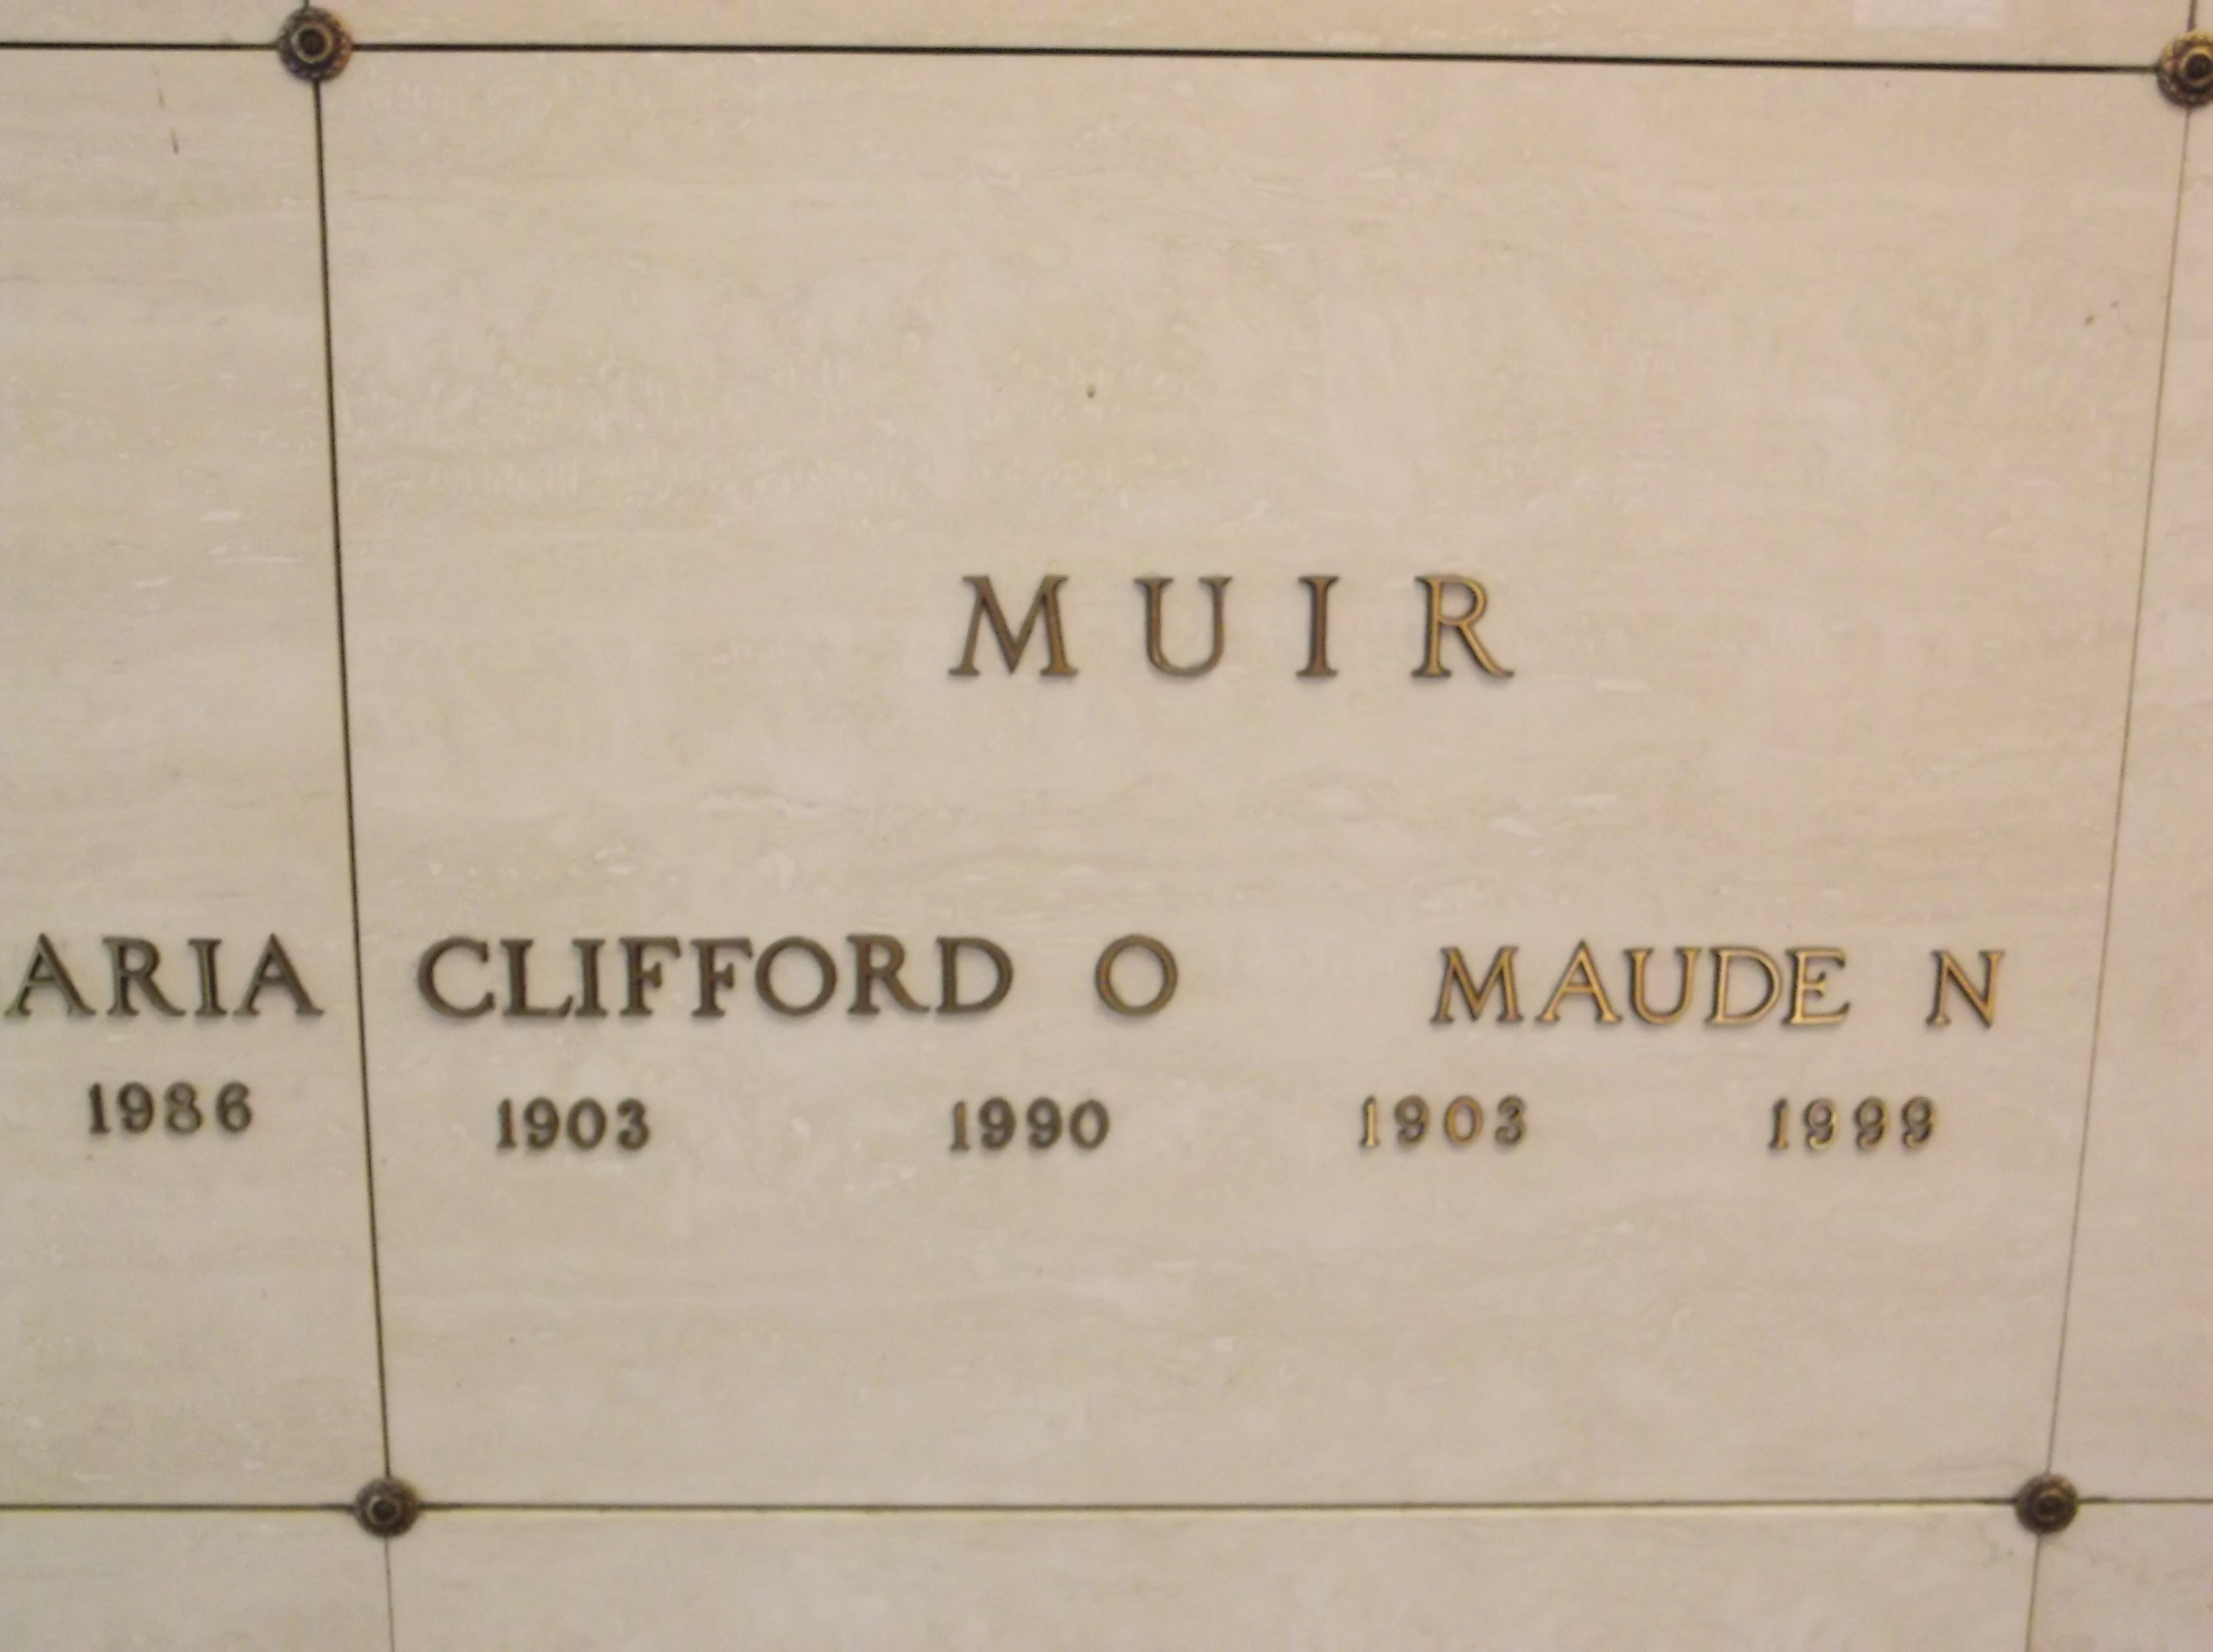 Maude N Muir